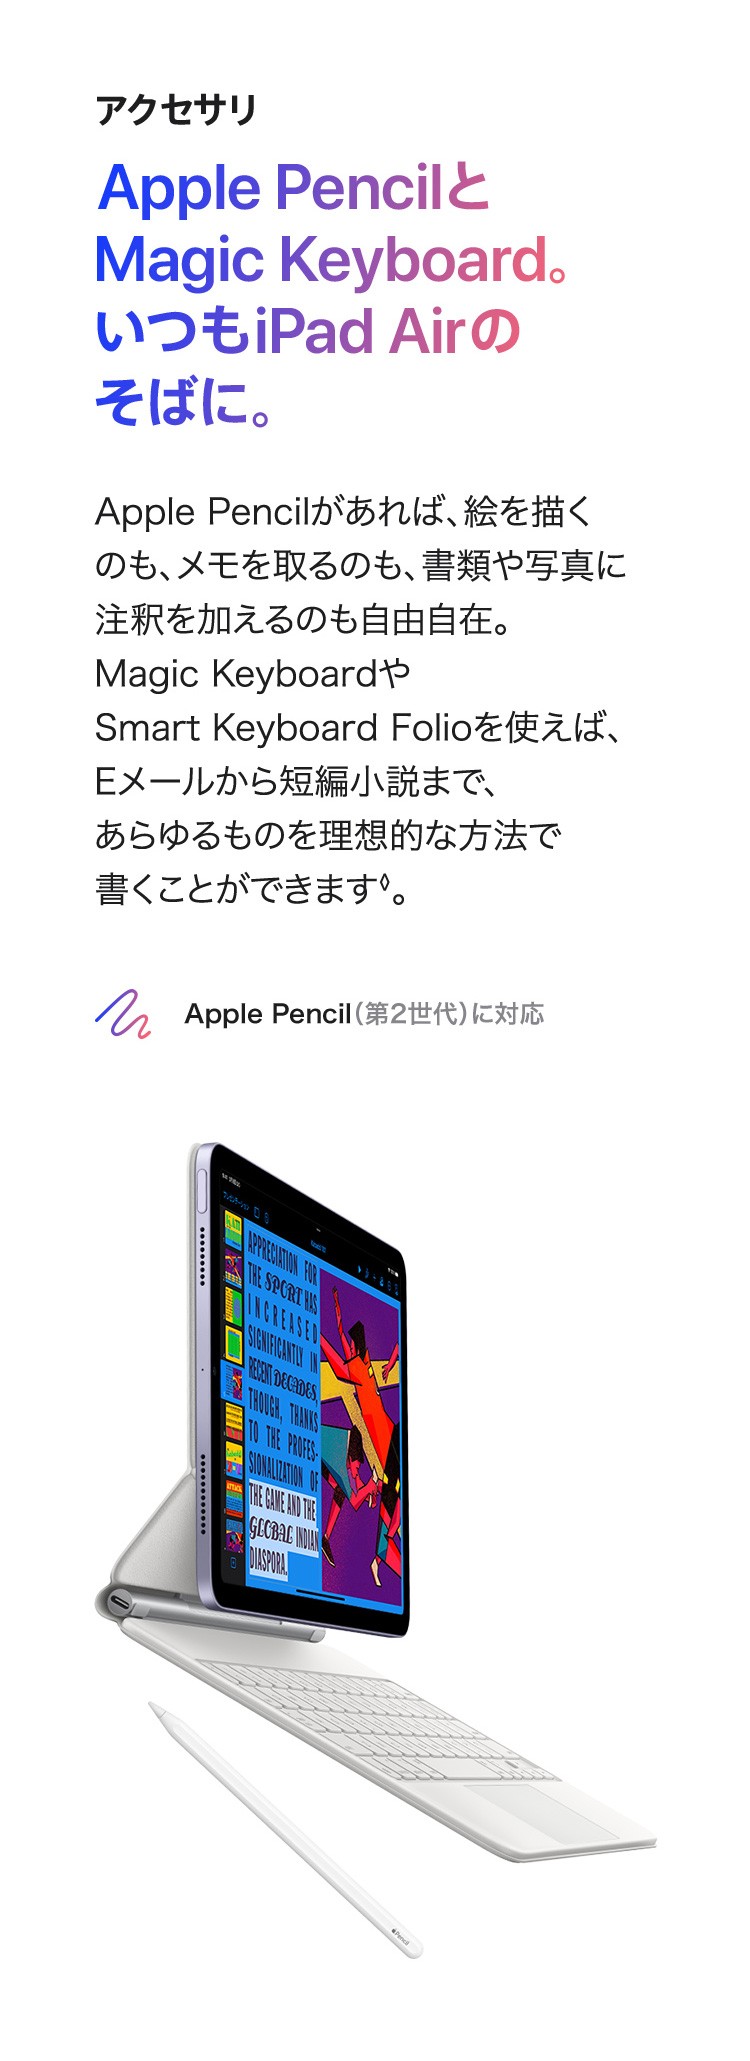 アクセサリ　Apple PencilとMagic Keyboard。いつもiPad Air　のそばに。Apple Pencilがあれば、絵を描くのも、メモを取るのも、書類や写真に注釈を加えるのも自由自在。Magic KeyboardやSmart Keyboard Folioを使えば、Eメールから短編小説まで、あらゆるものを理想的な方法で書くことができます。　Apple Pencil (第2世代) に対応